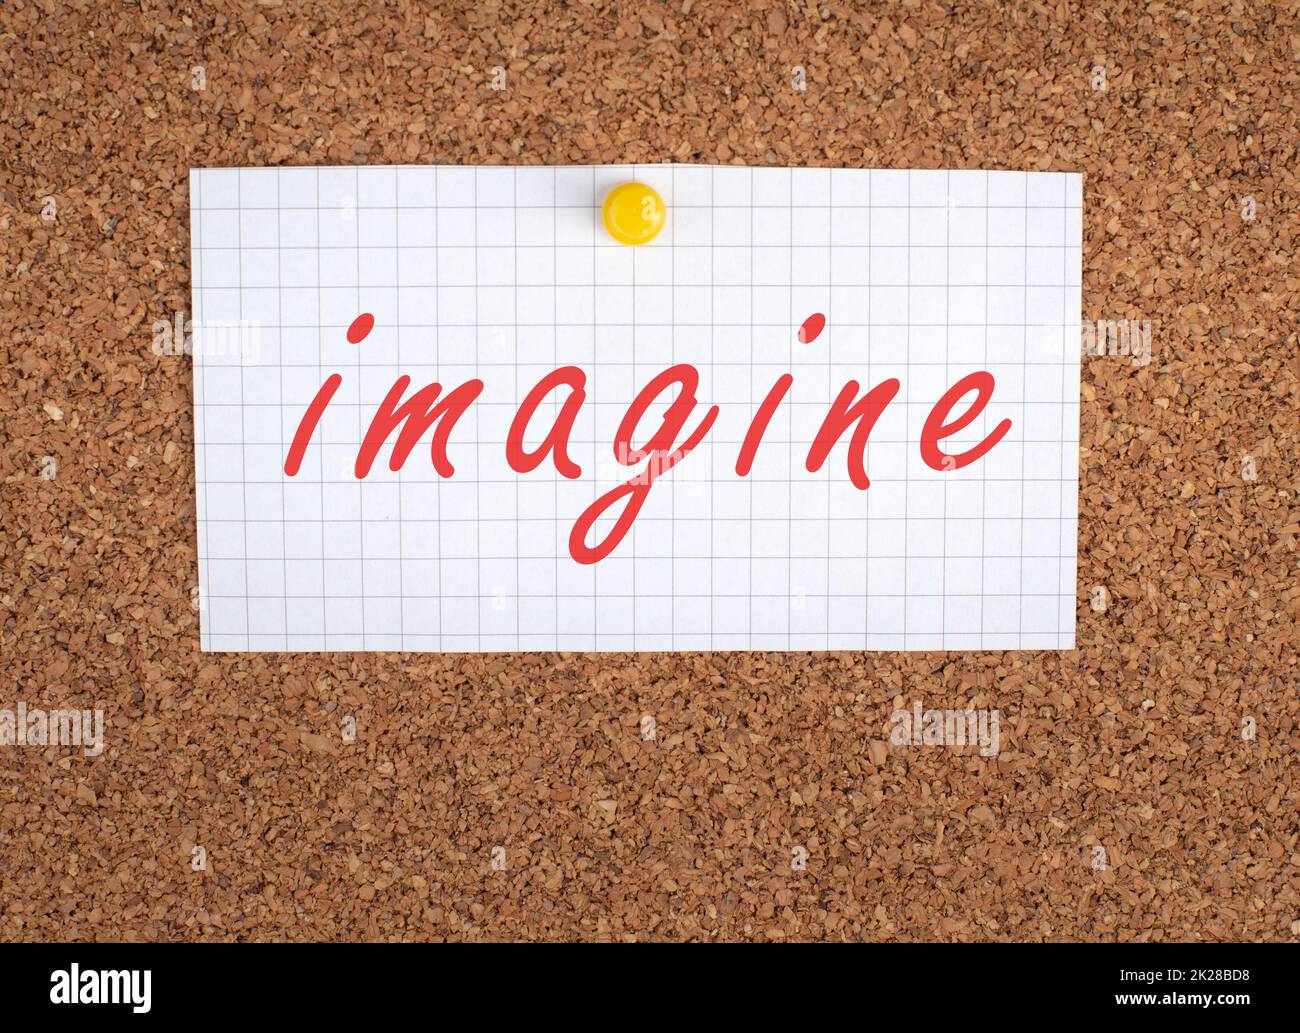 Le mot imagine se trouve en rouge sur un papier épinglé, un concept créatif, un rêve futuriste, une histoire racontée Banque D'Images